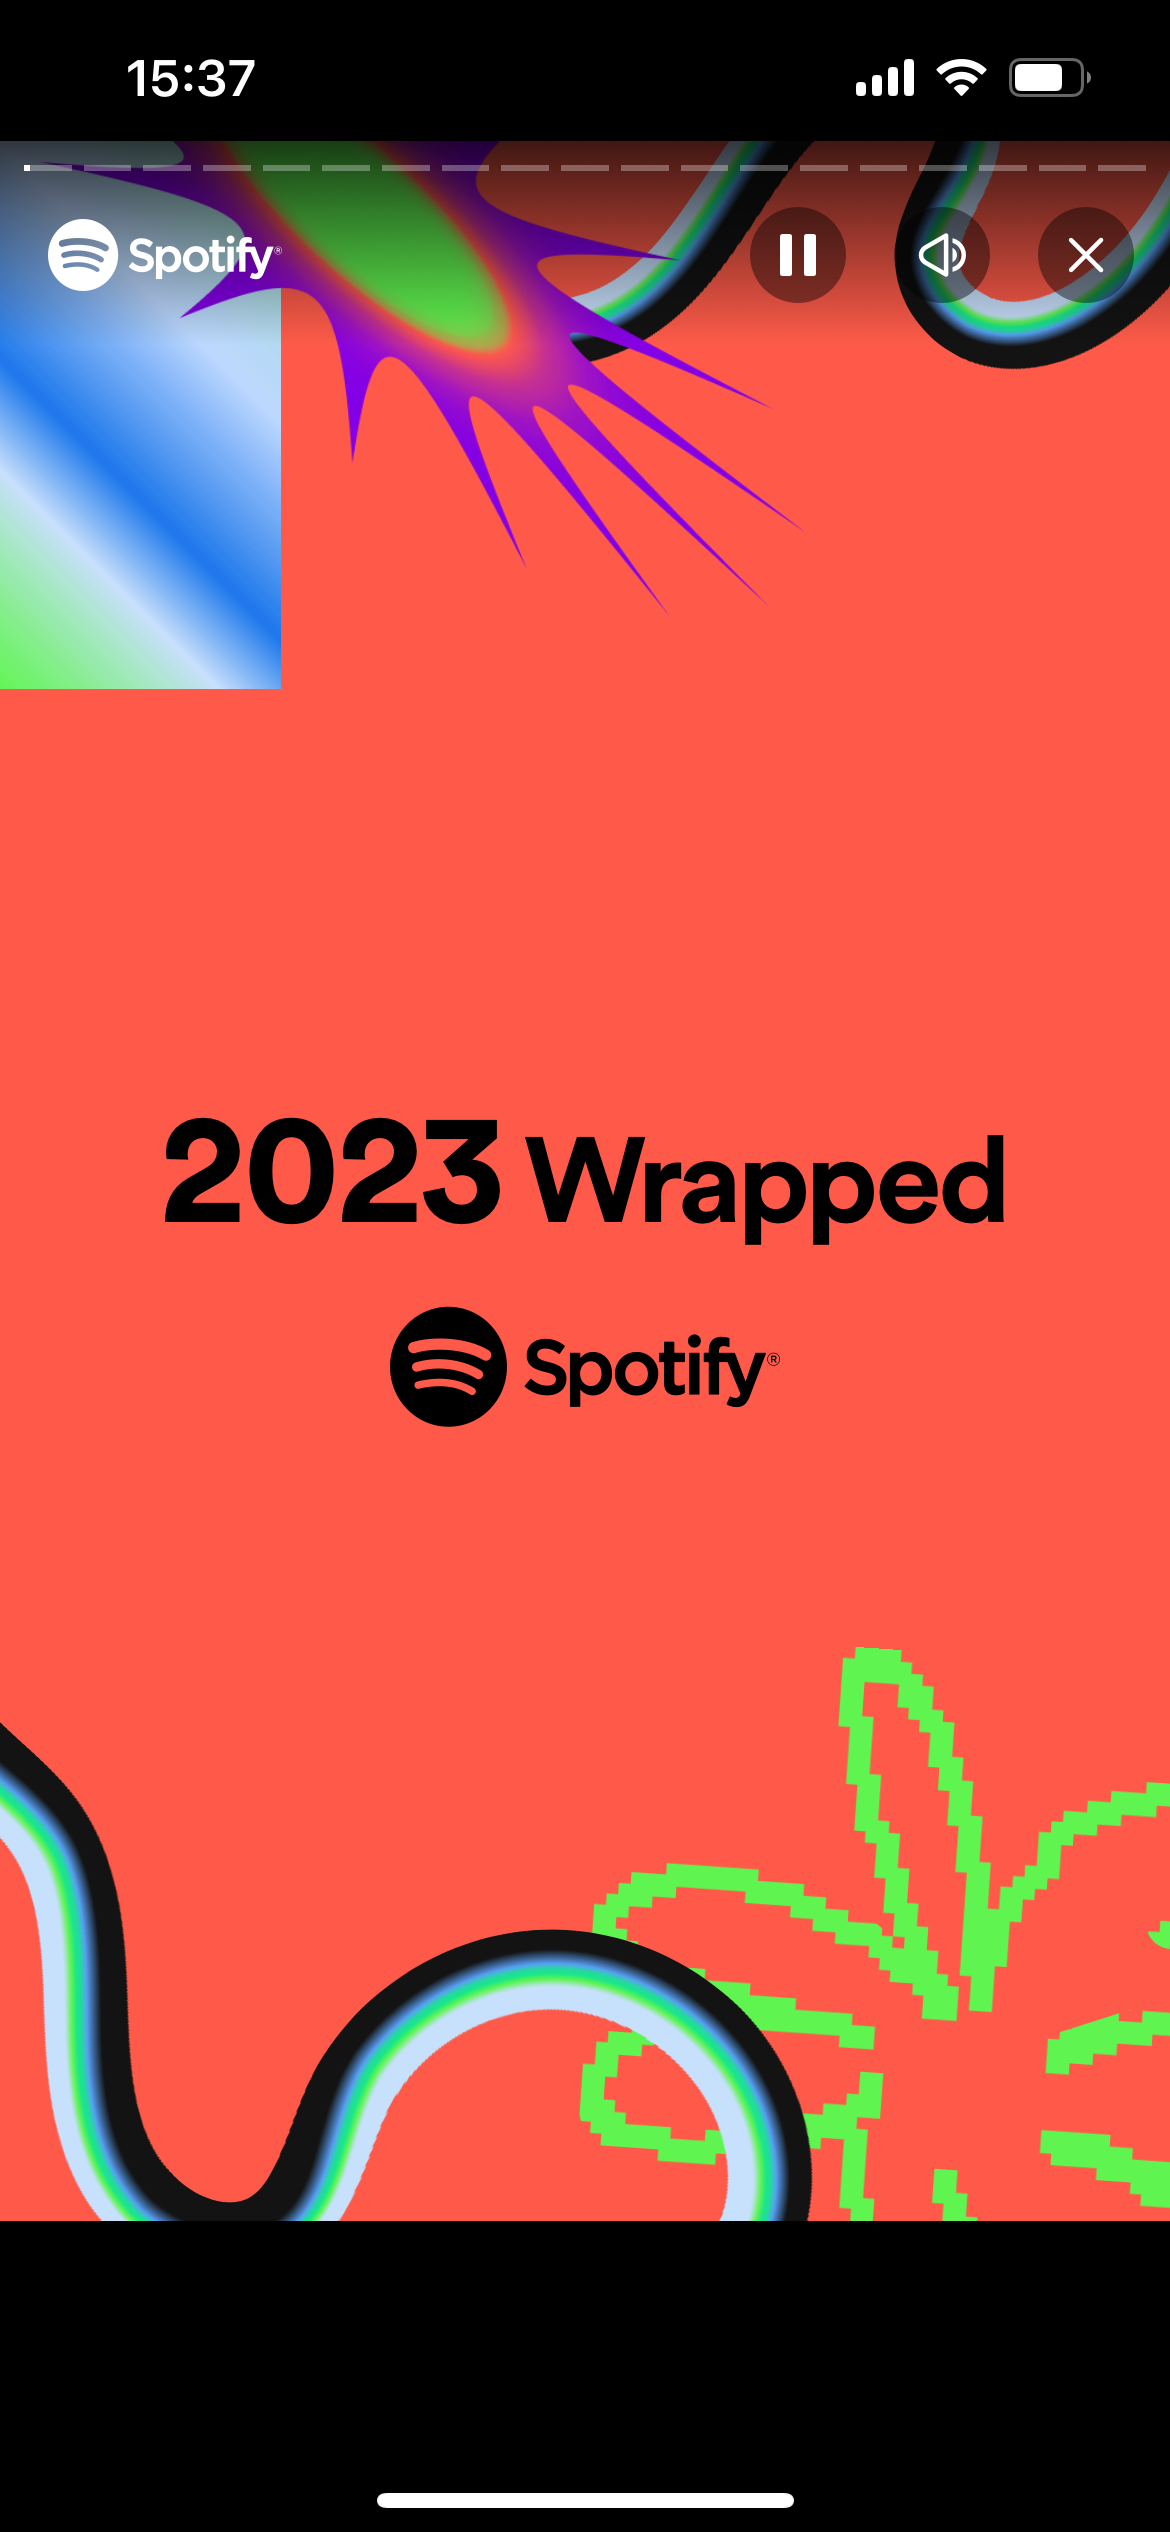 So erhalten Sie Ihr Spotify Wrapped 2023